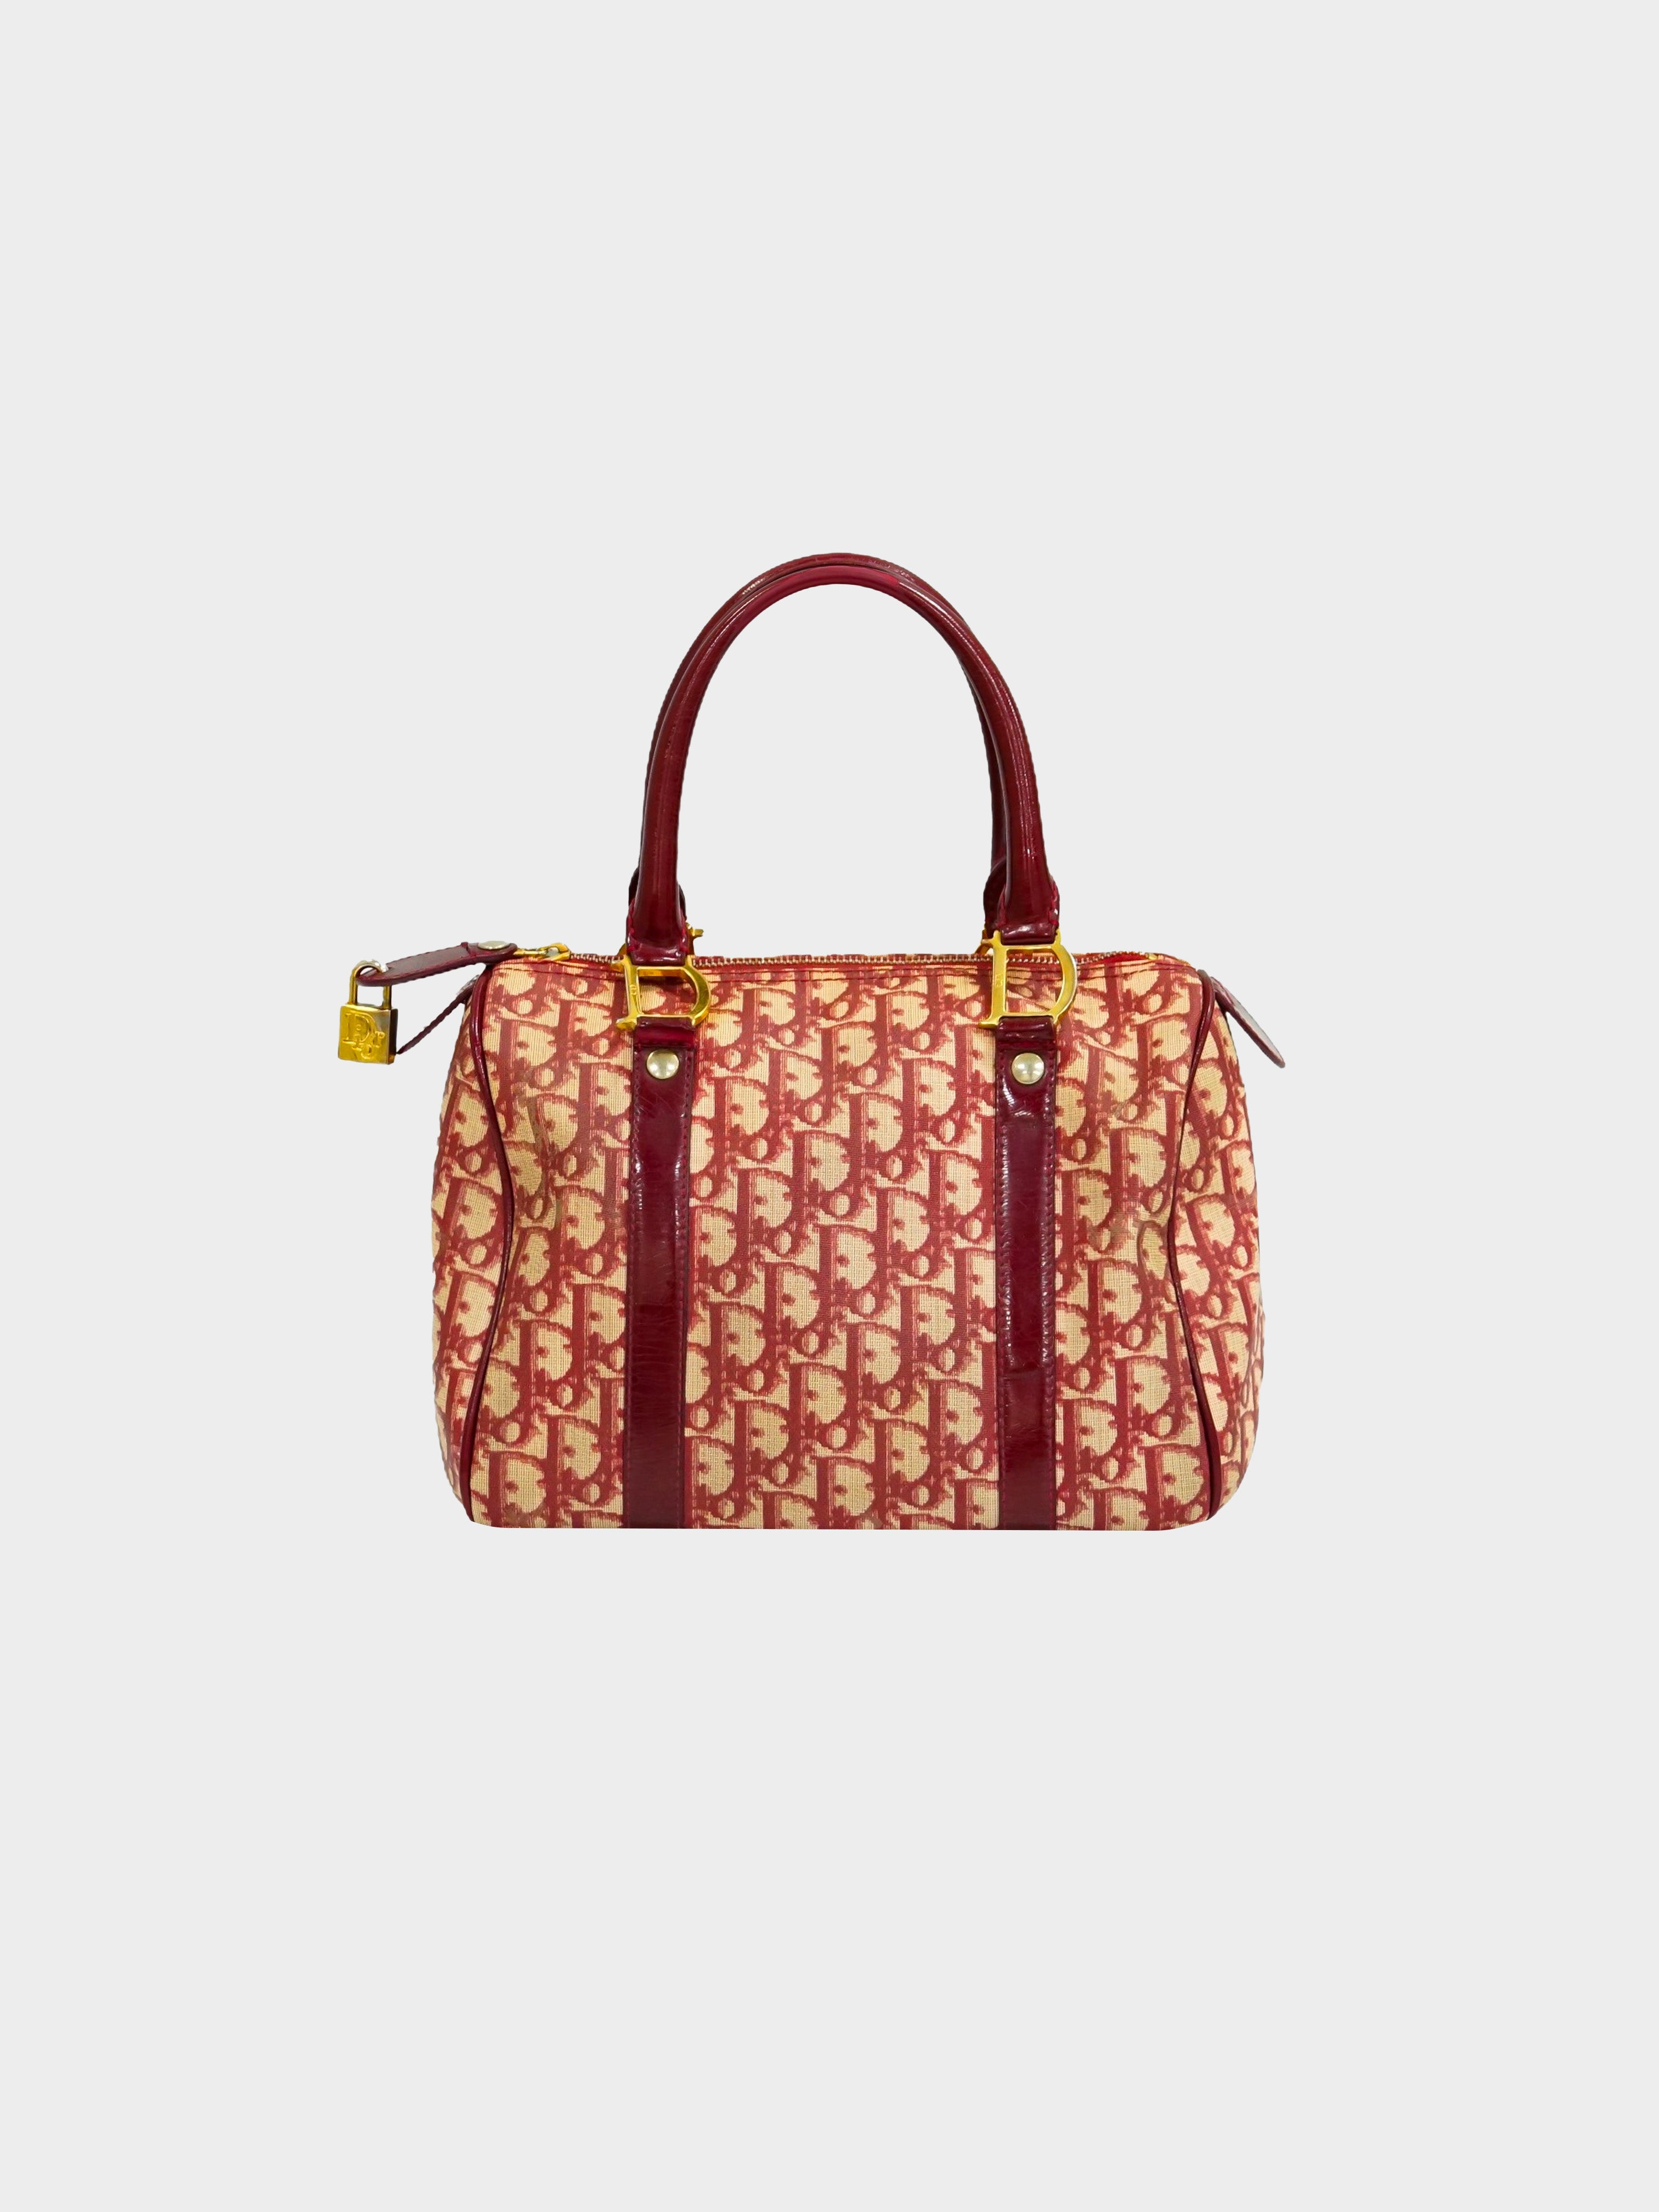 ✨✨✨✨SOLD✨✨✨✨ Dior RARE Trotter Shoulder Bag Purse